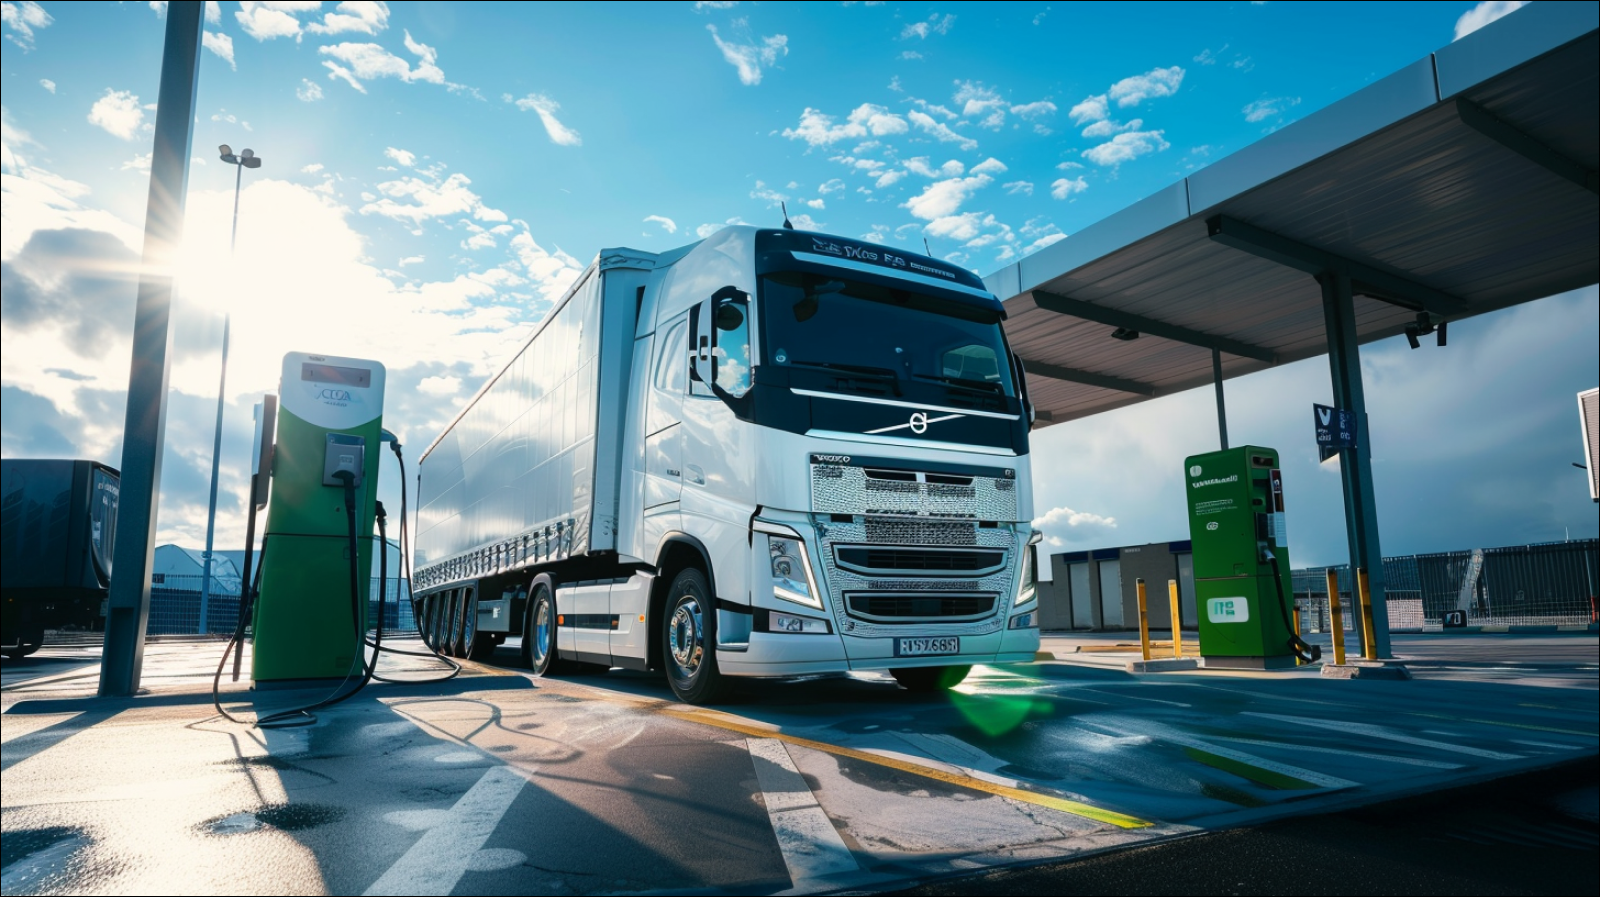 Ein Wasserstoff-Brennstoffzellen-Lastwagen ist an einer grünen Zapfsäule unter strahlend blauem Himmel